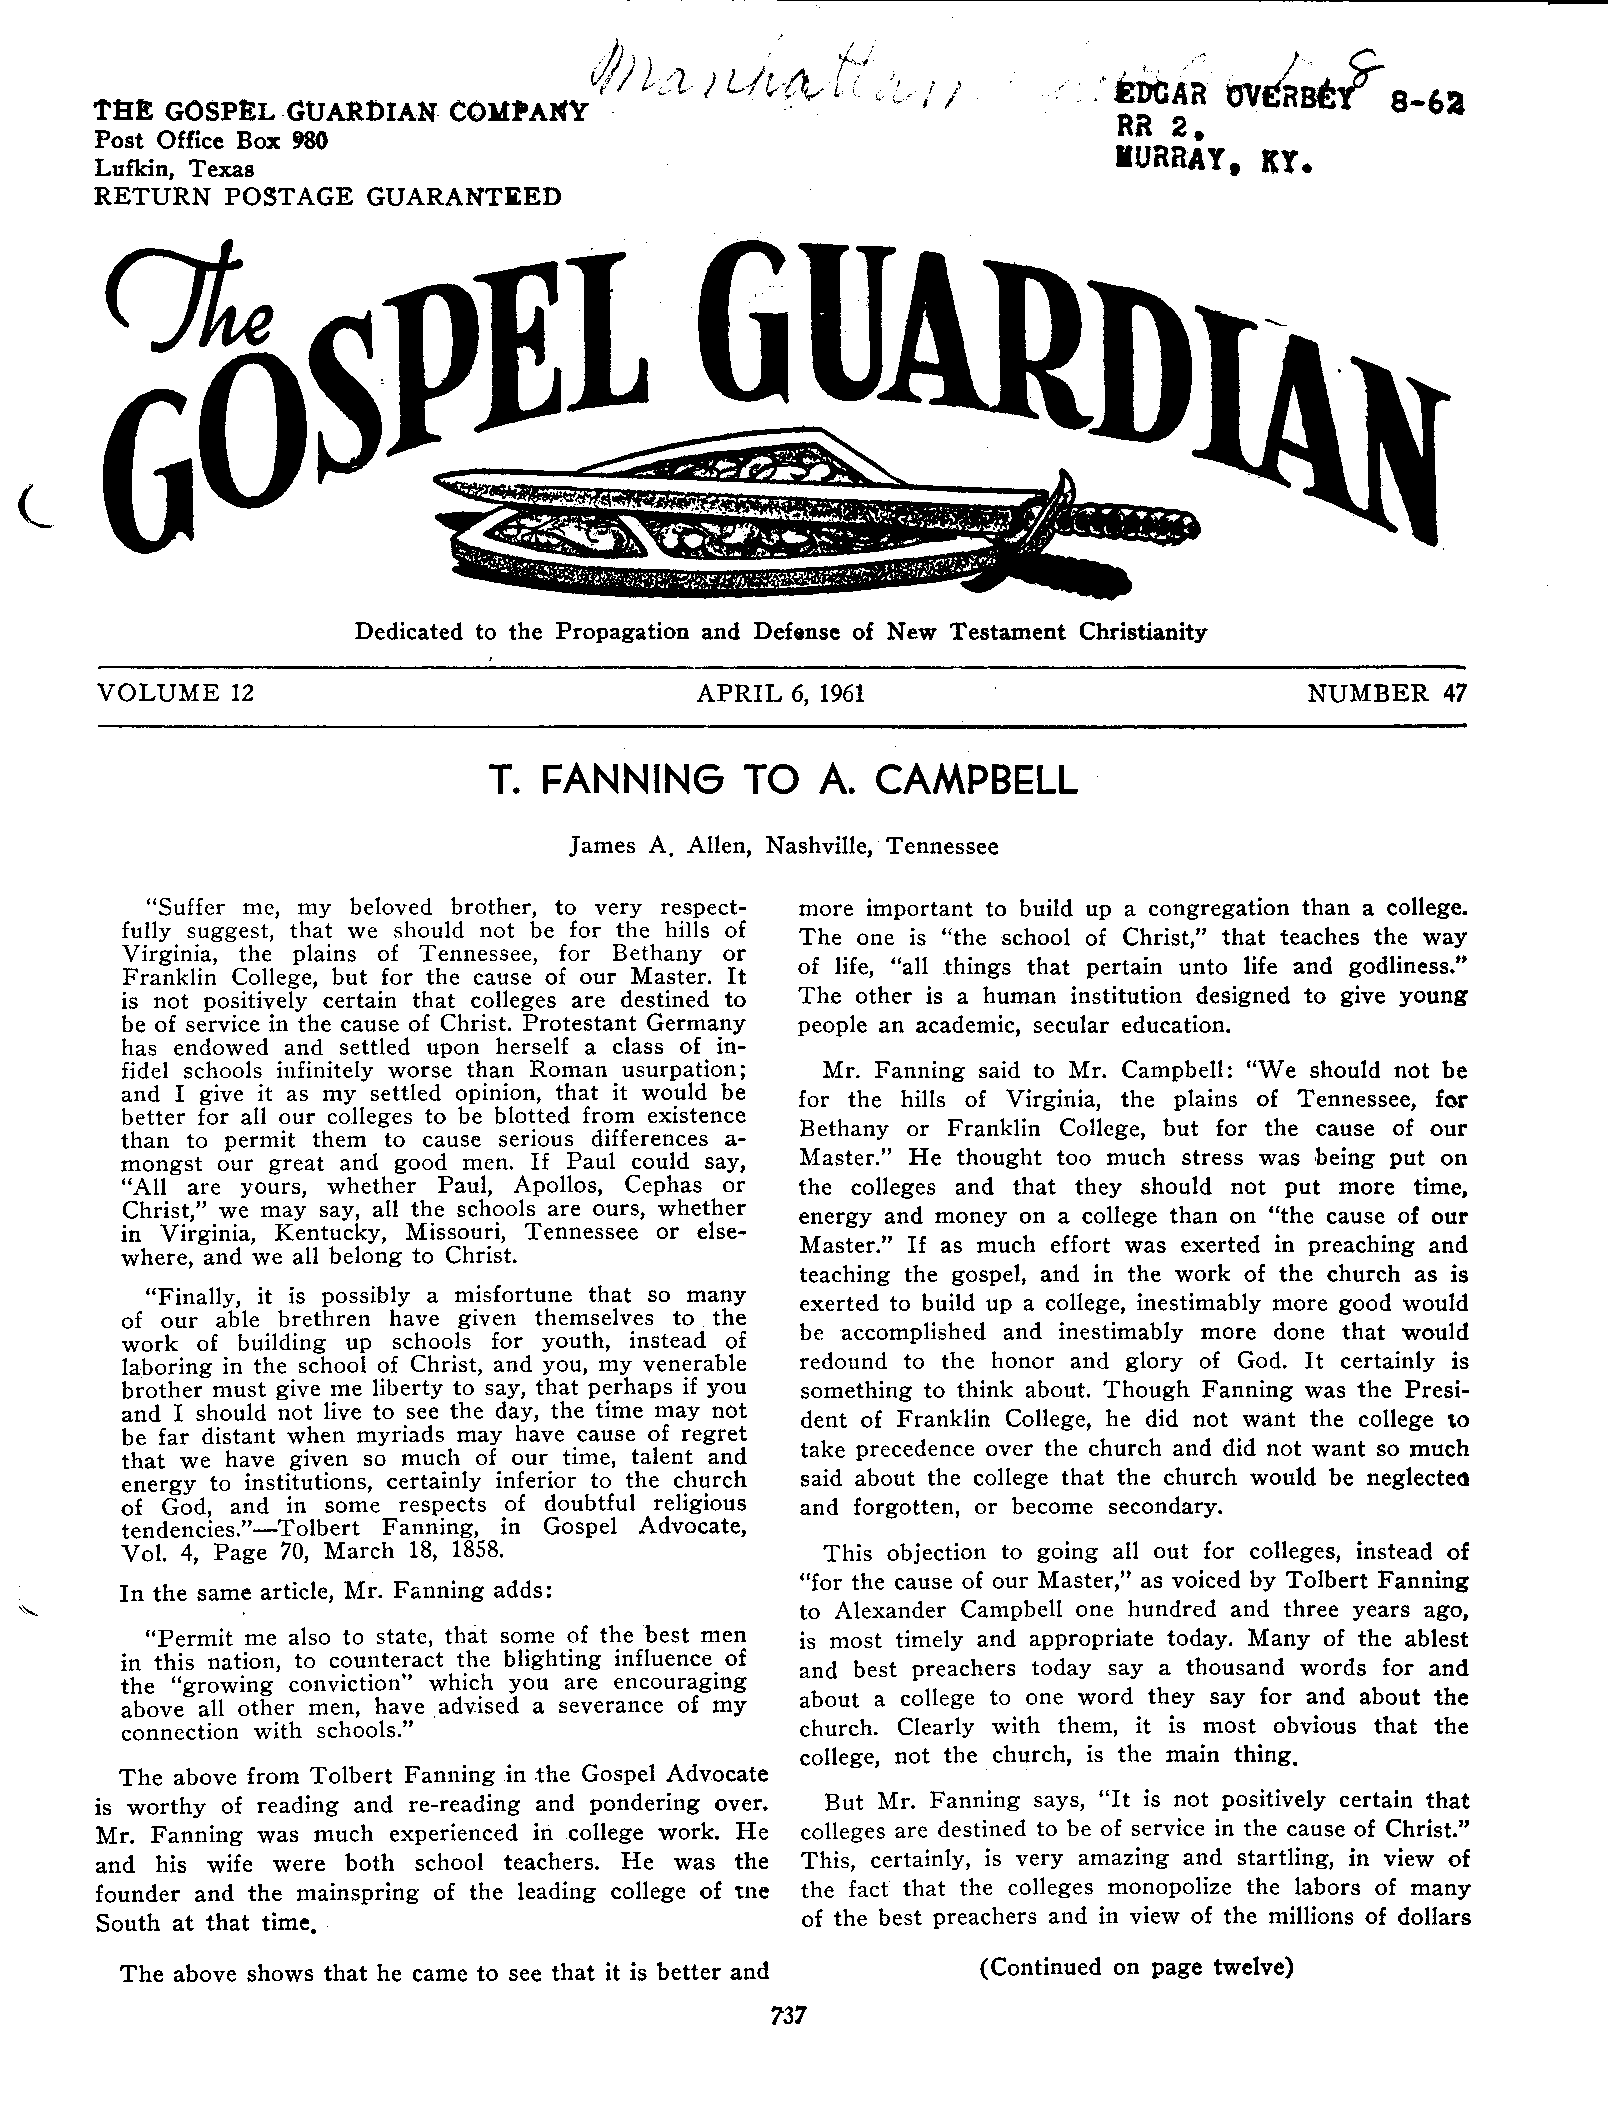 Gospel Guardian Original: Vol.12 No.47 Pg.1